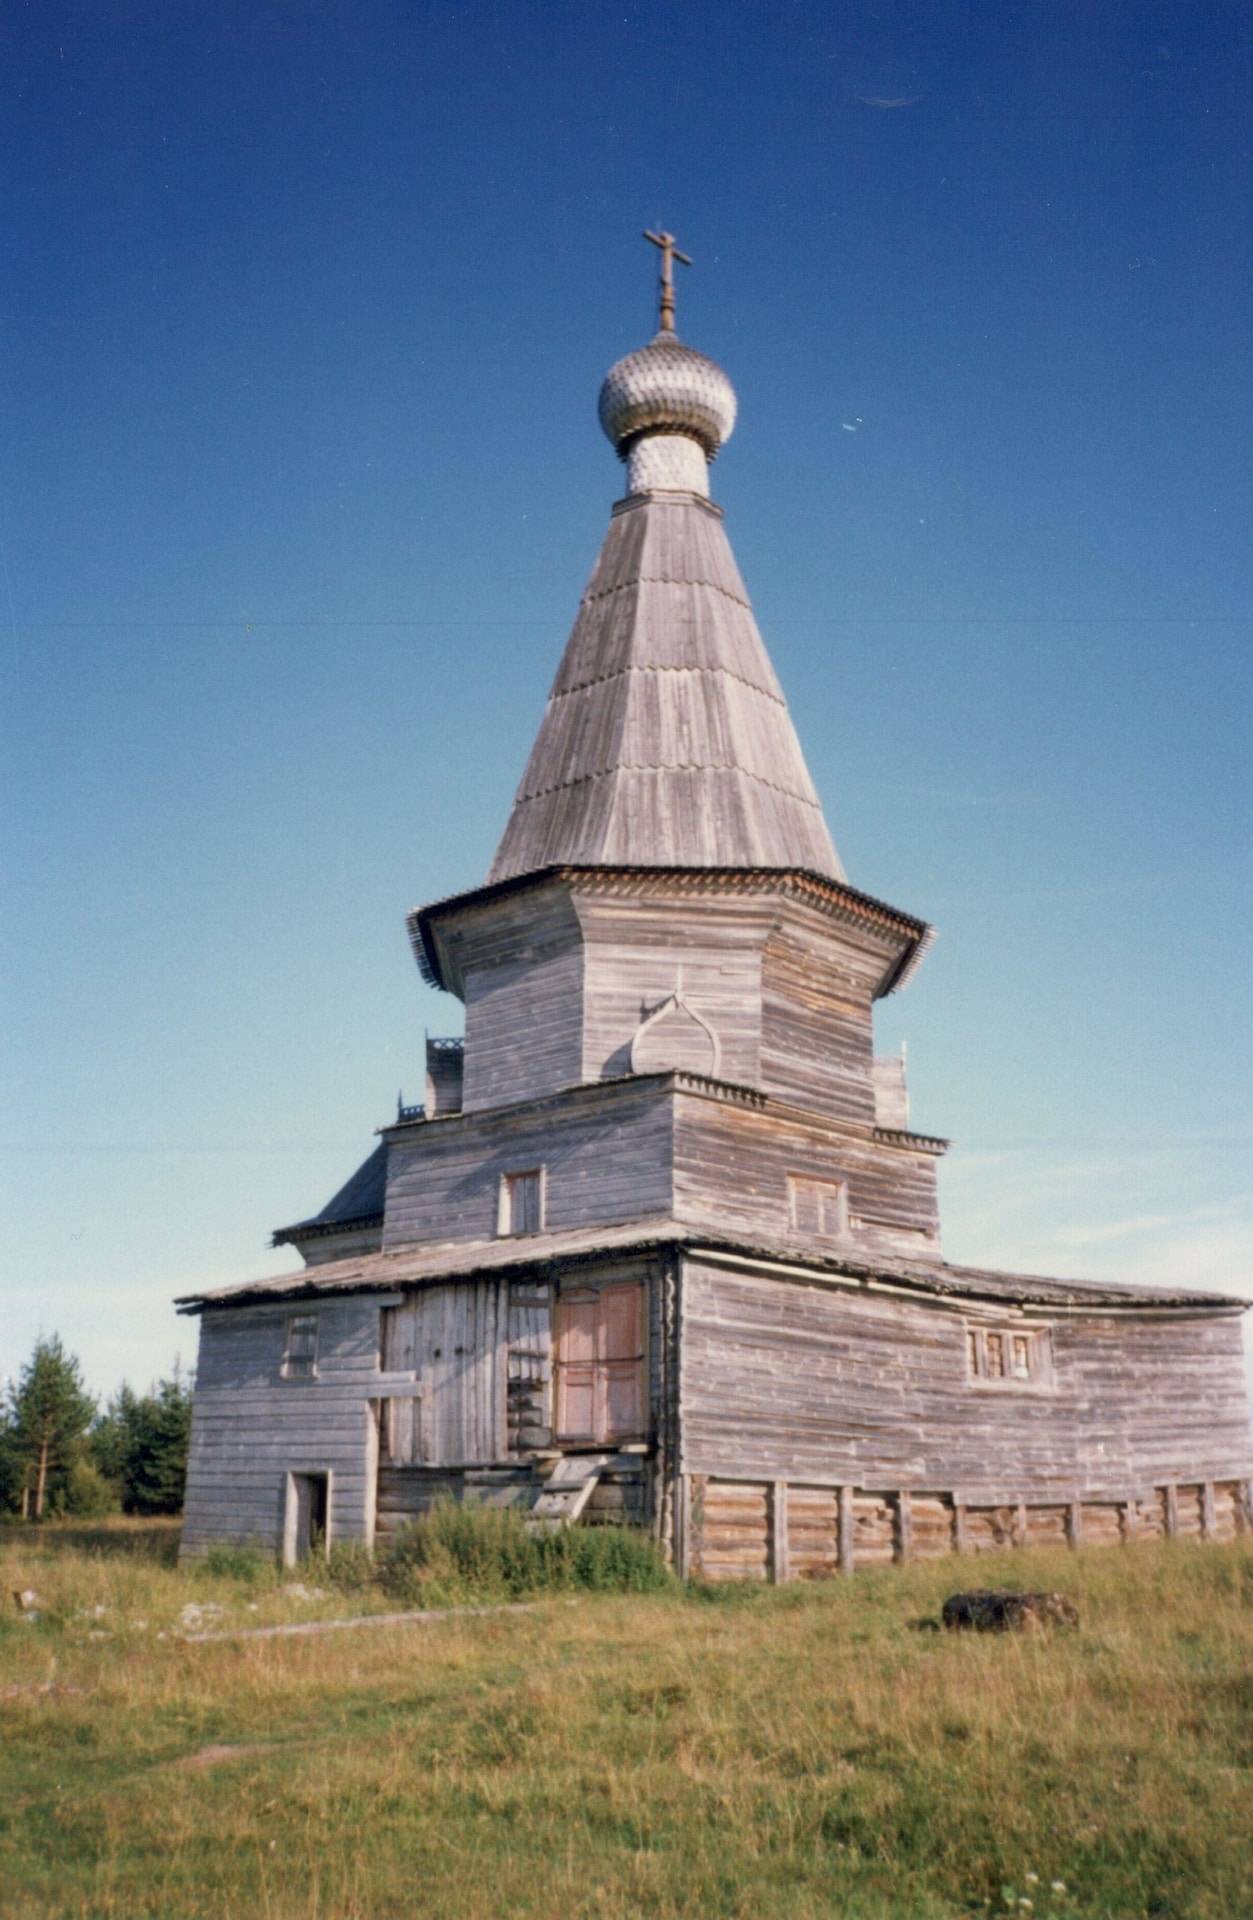 Шатровая церковь Николая Чудотворца (1618 год) — памятник архитектуры федерального значения. Село Пурнема, Онежский район, 1997 год